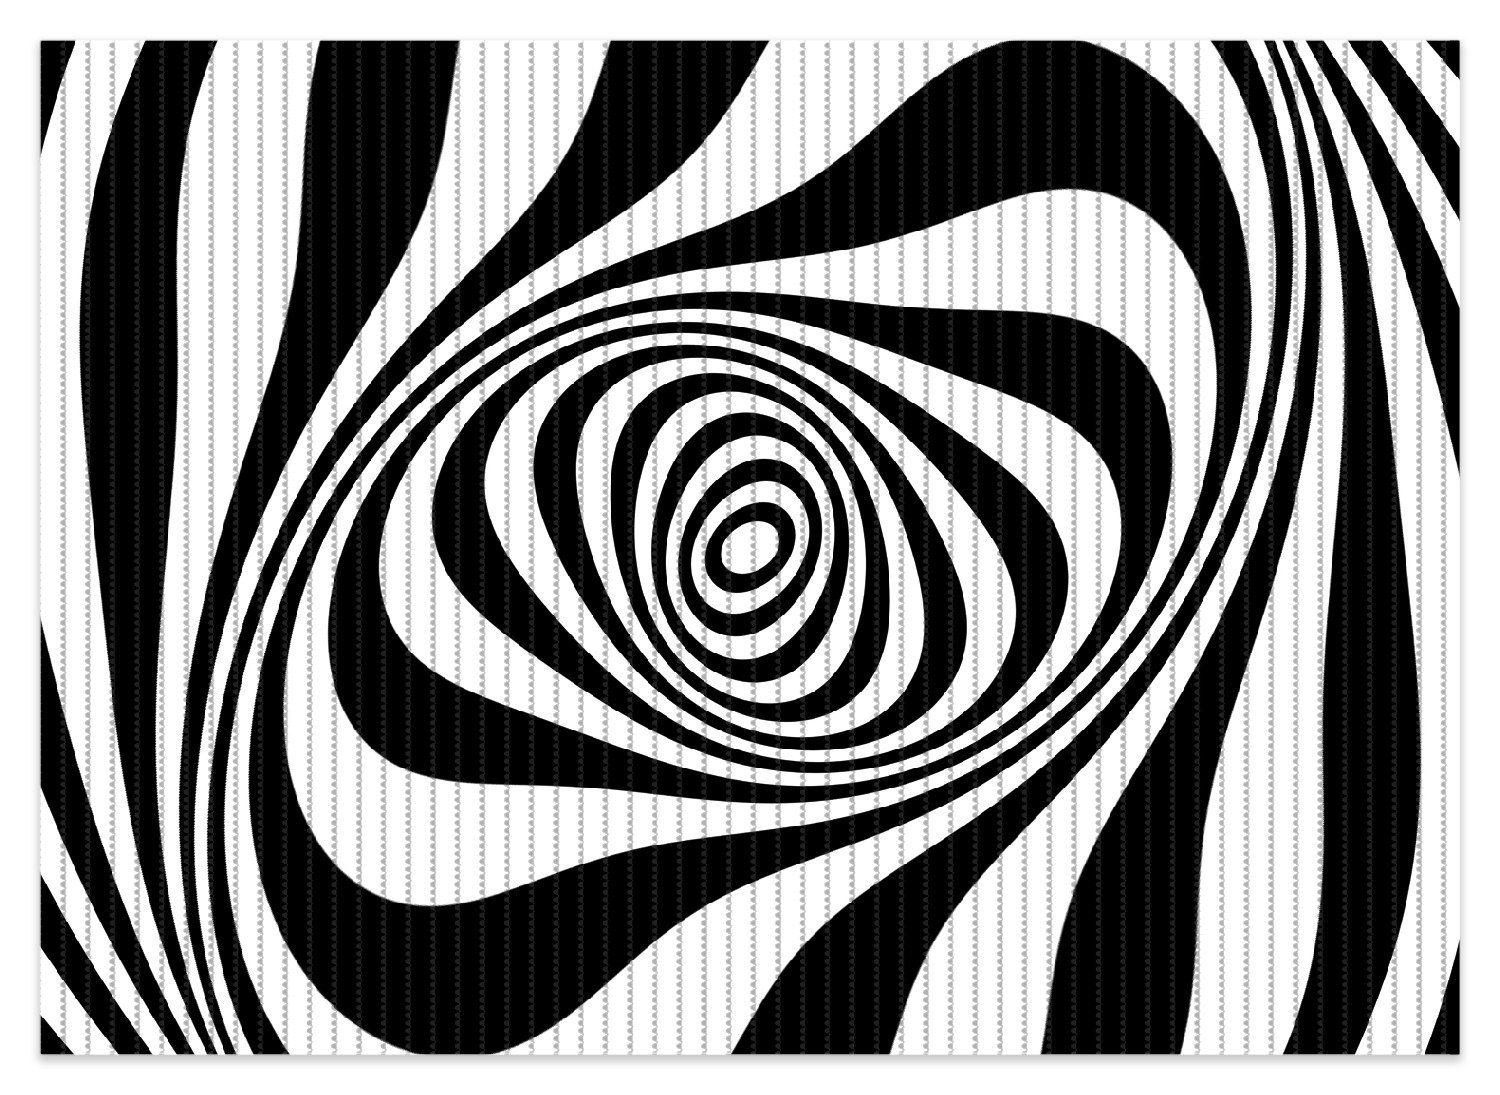 Schaum-Badematte Optische Täuschung - Zebra Muster - schwarz weiß Wallario, Höhe 5.5 mm, rutschhemmend, geeignet für Fußbodenheizungen, Polymer-Schaum, rechteckig